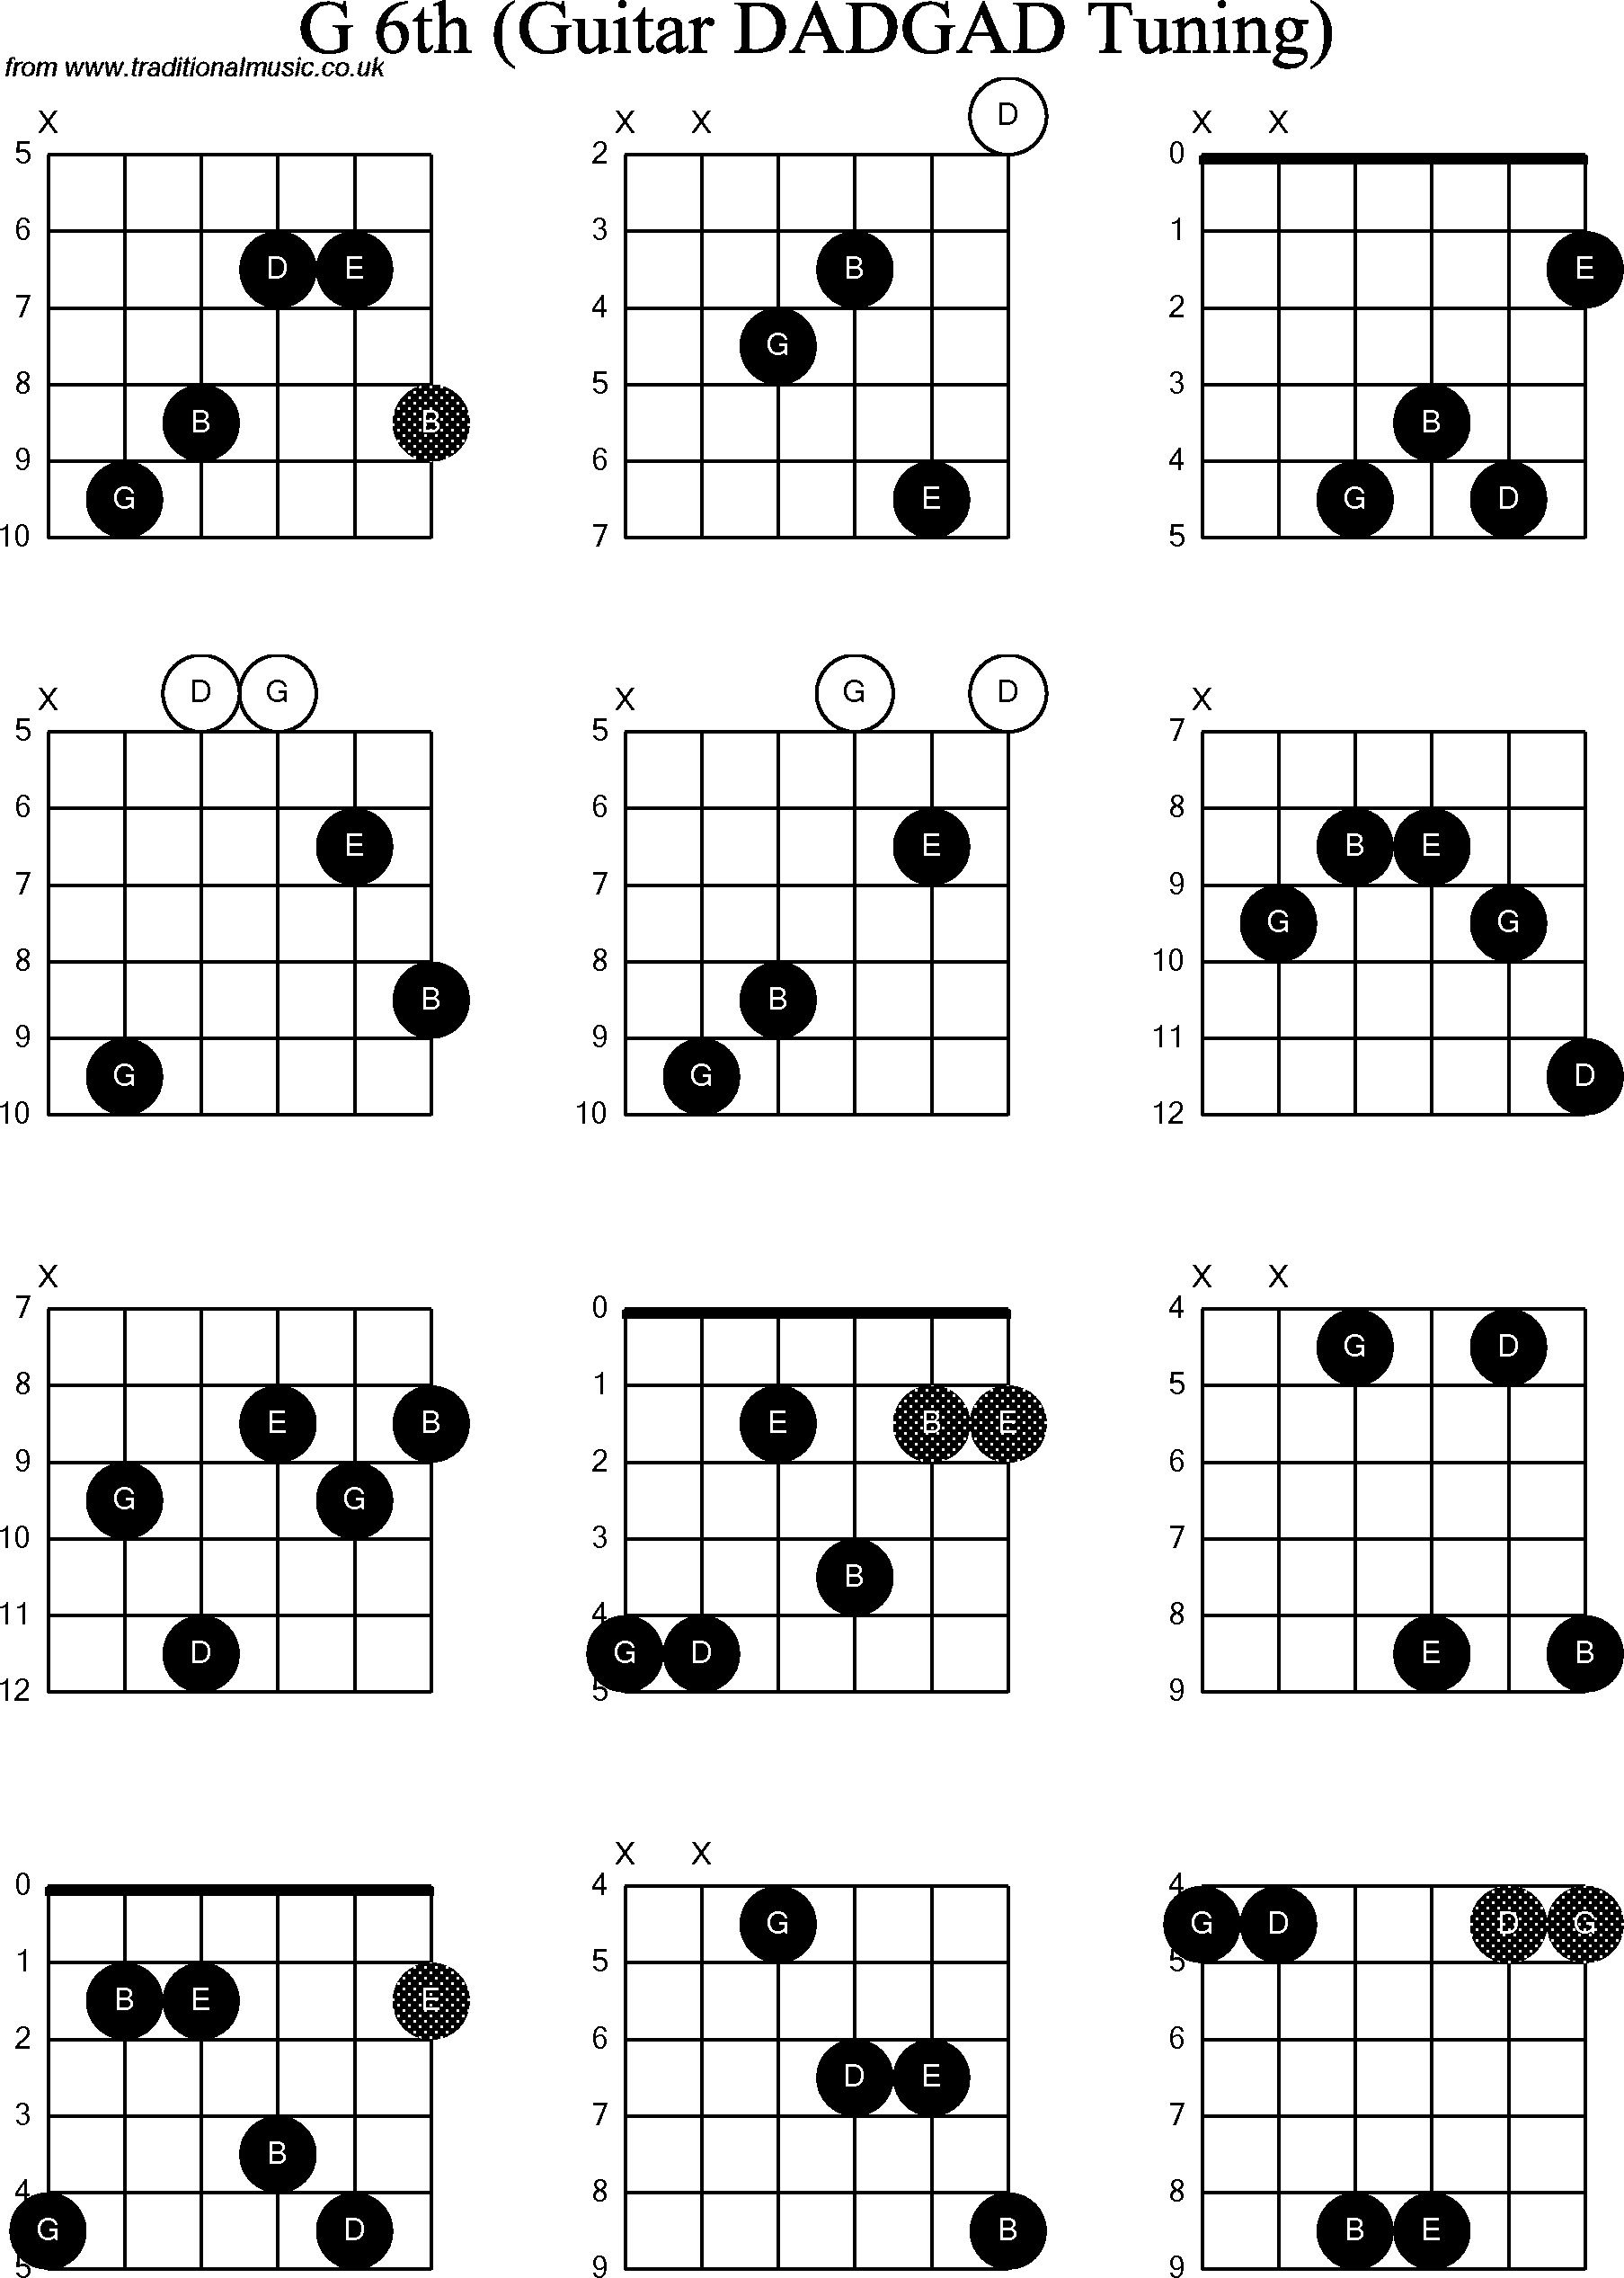 Chord Diagrams for D Modal Guitar(DADGAD), G6th